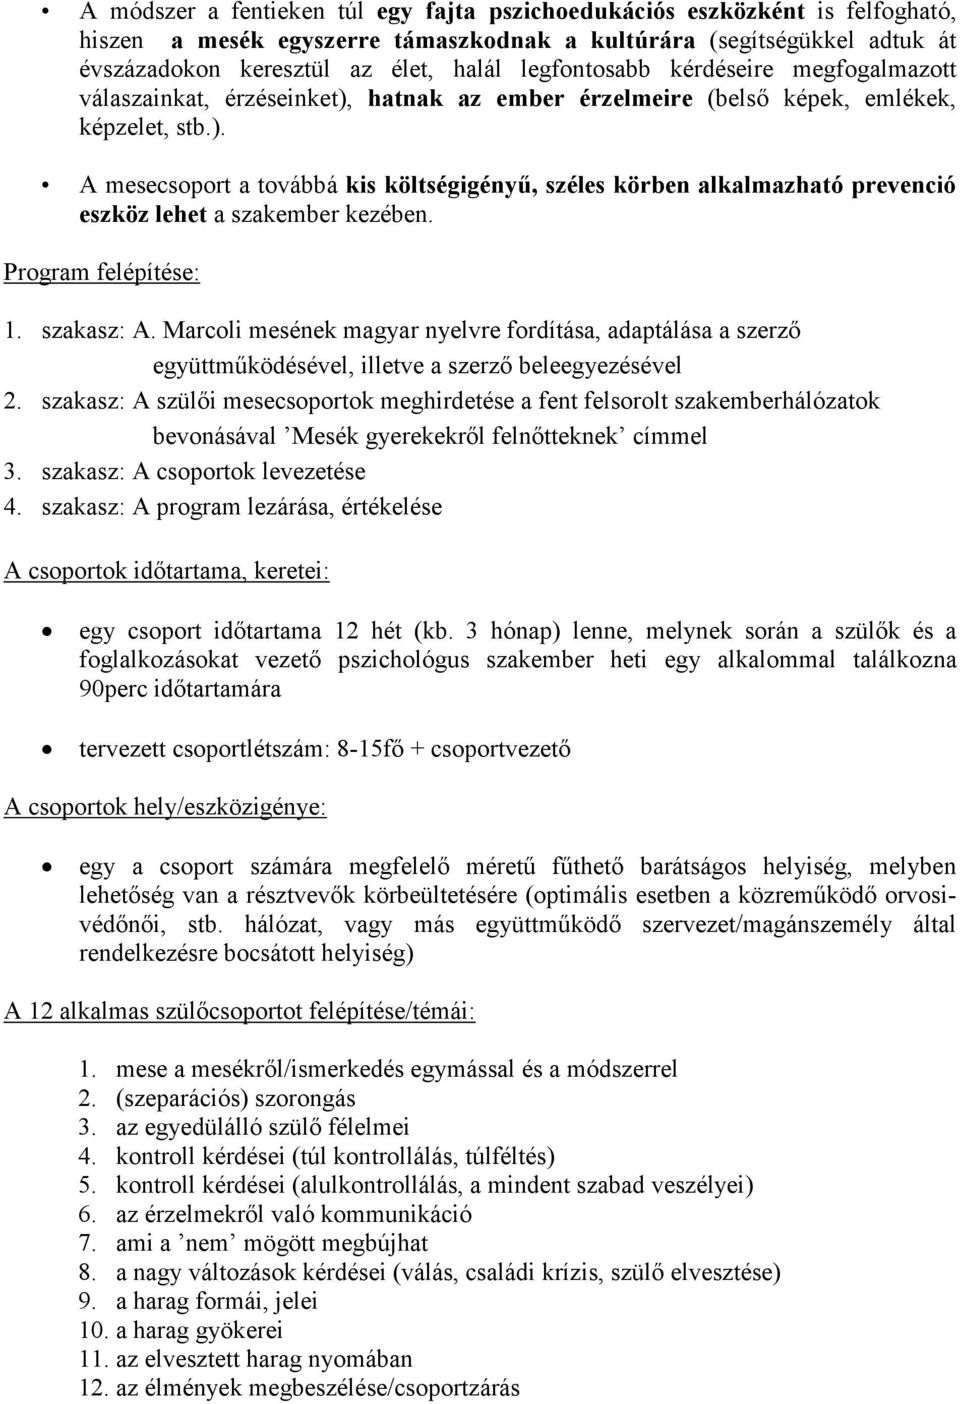 Program felépítése: 1. szakasz: A. Marcoli mesének magyar nyelvre fordítása, adaptálása a szerző együttműködésével, illetve a szerző beleegyezésével 2.